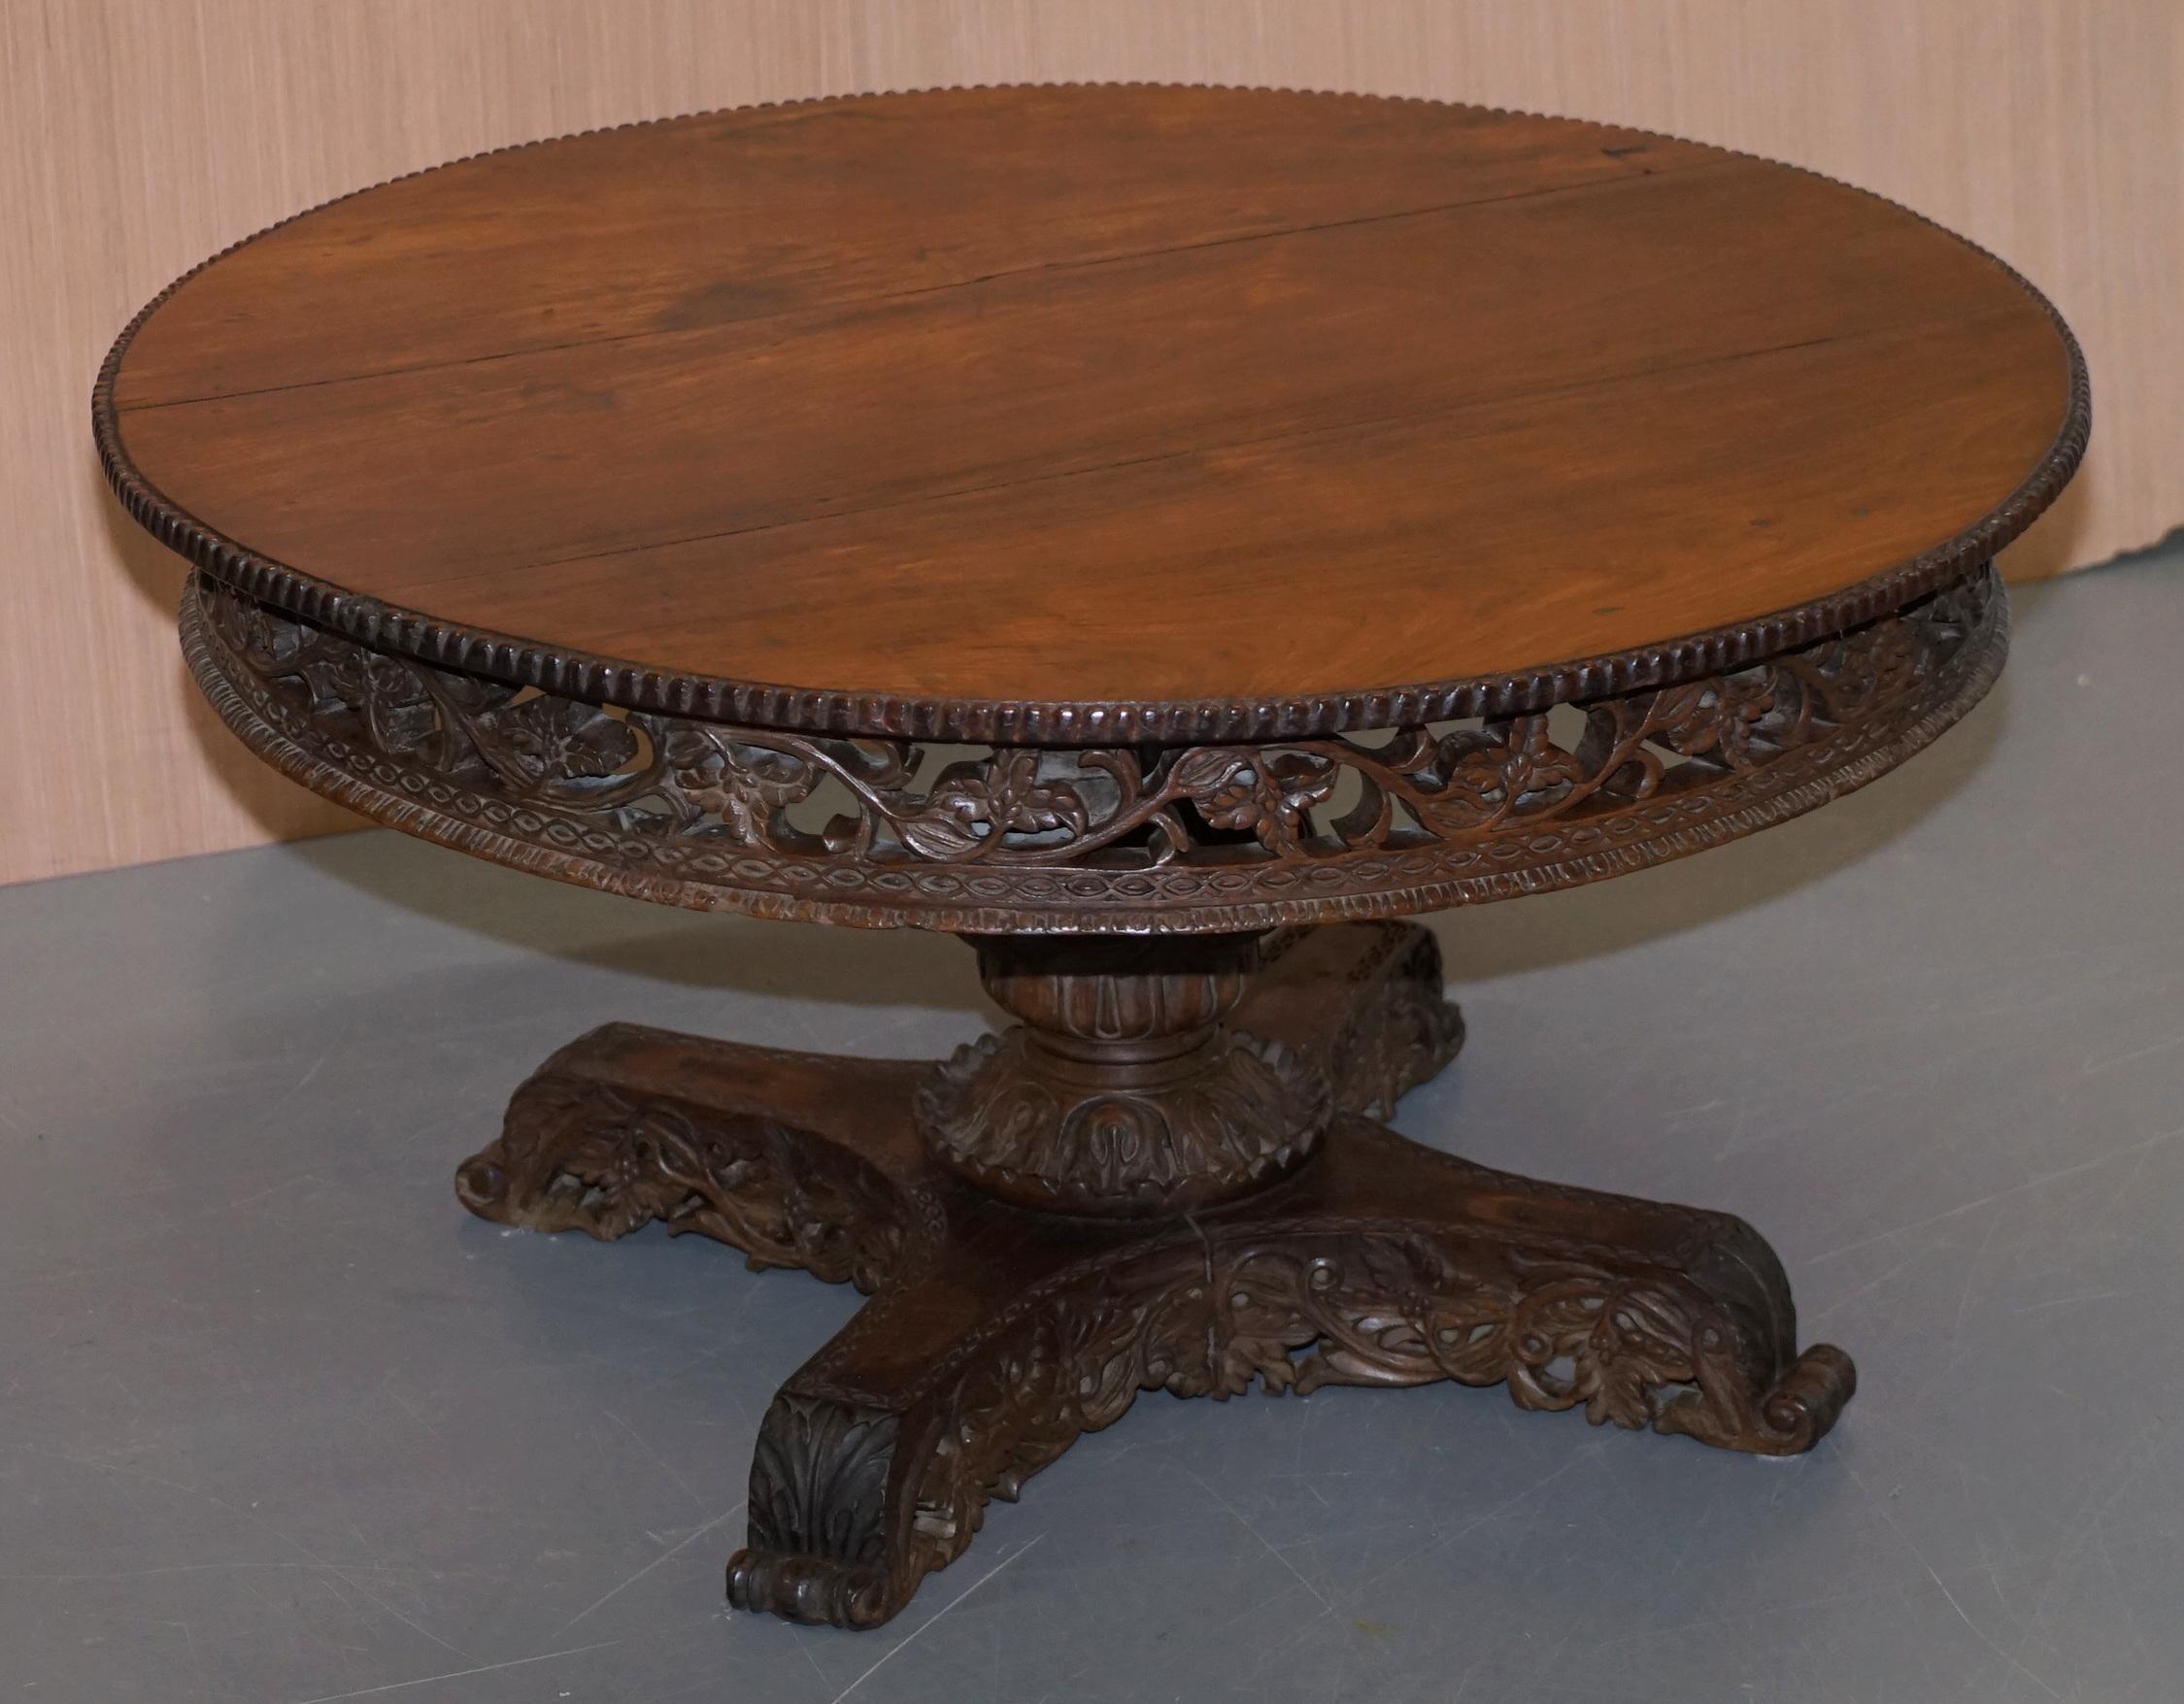 Nous sommes ravis d'offrir à la vente cette superbe table basse en bois massif sculpté à la main par les Anglo-Indiens vers 1880.

Une très belle table de collection, conçue à l'origine comme table centrale, mais selon les normes occidentales,